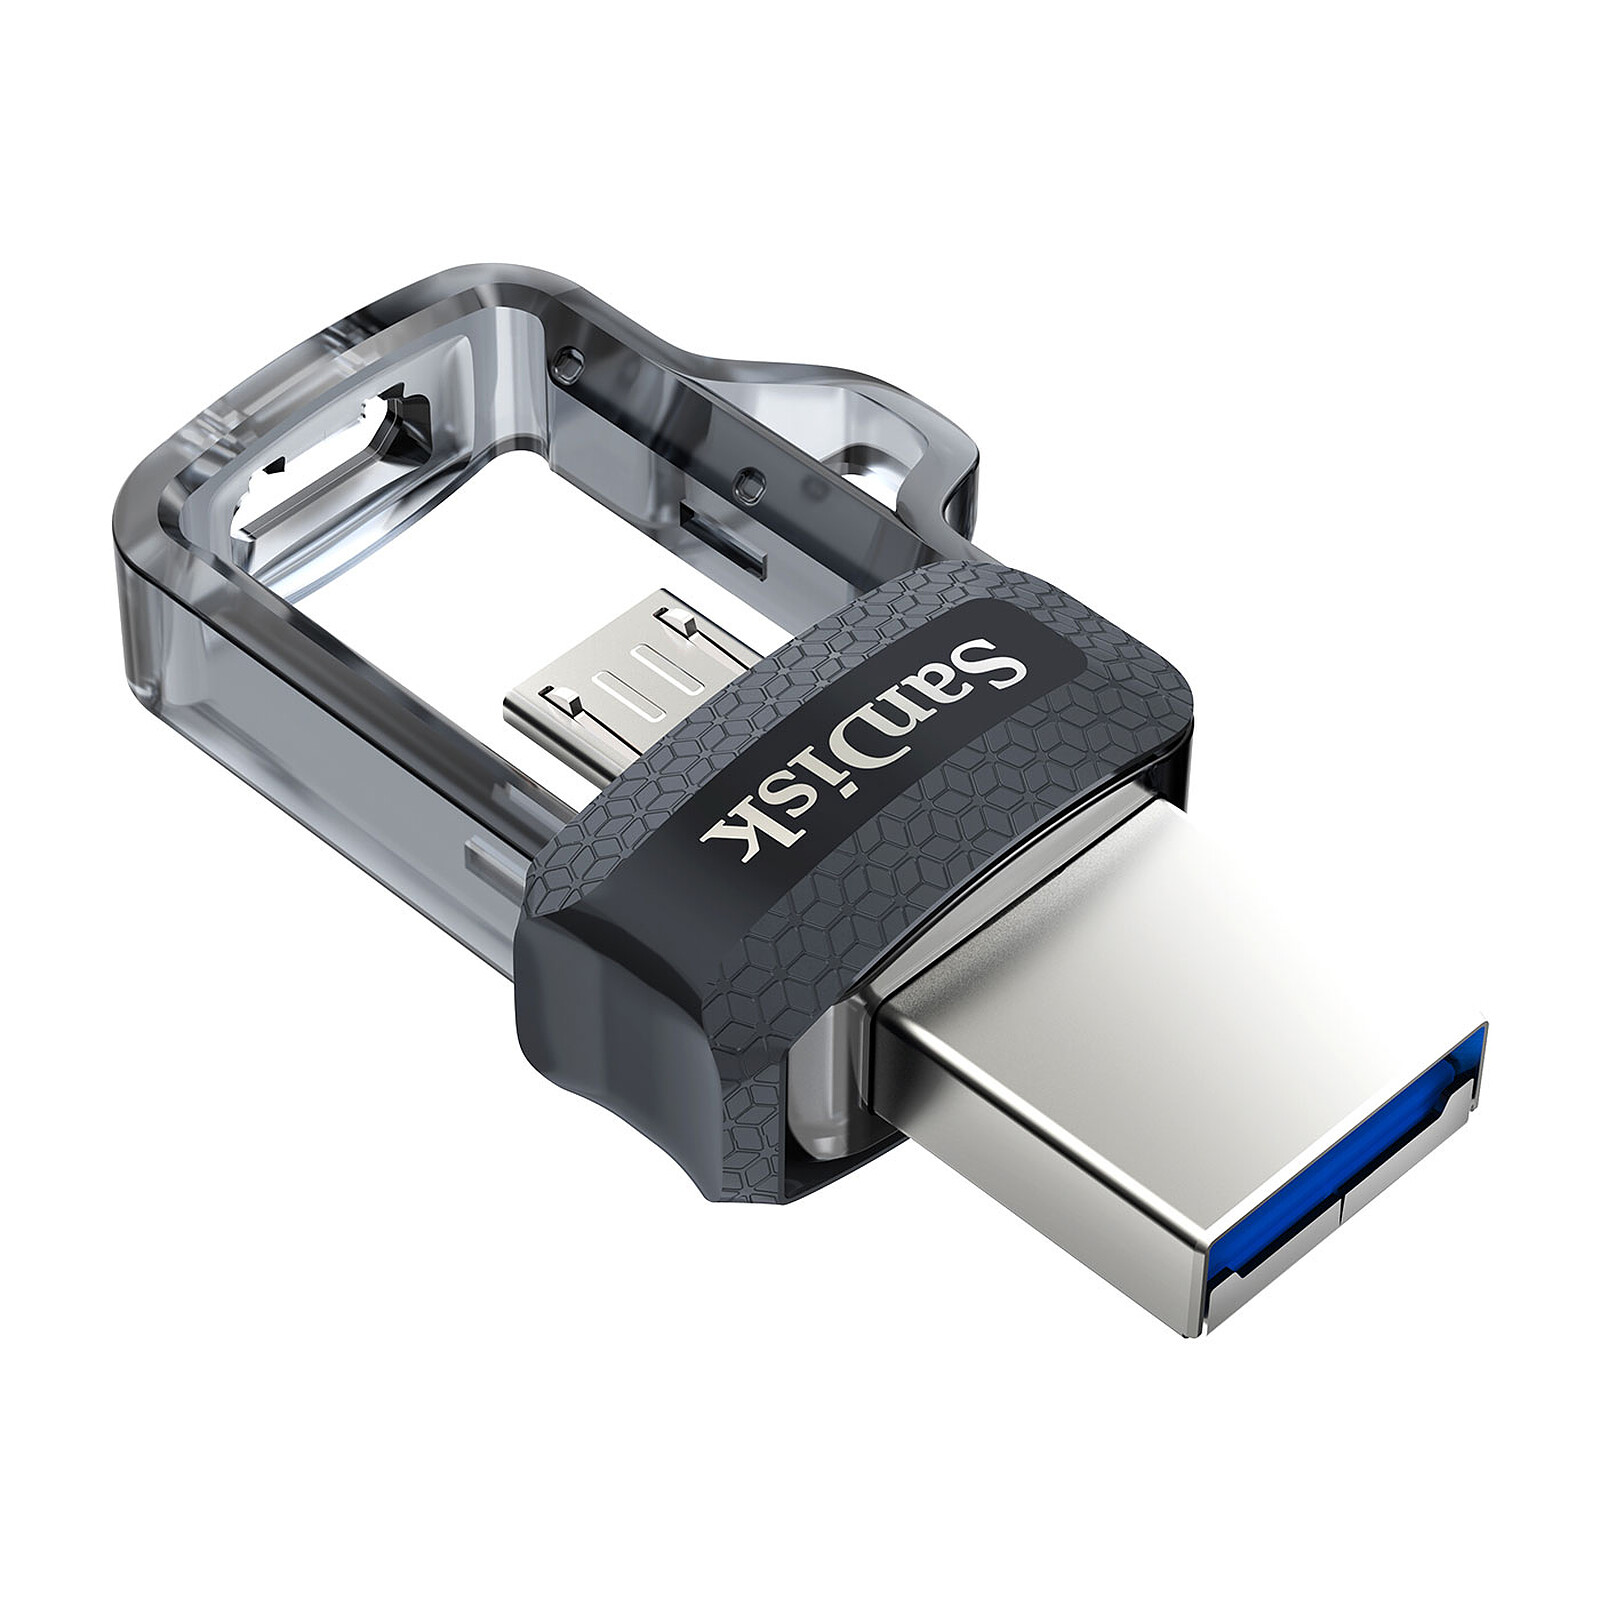 Clé USB-C SANDISK Ultra Dual Drive 32 GB ports USB-C / USB 3.1 150